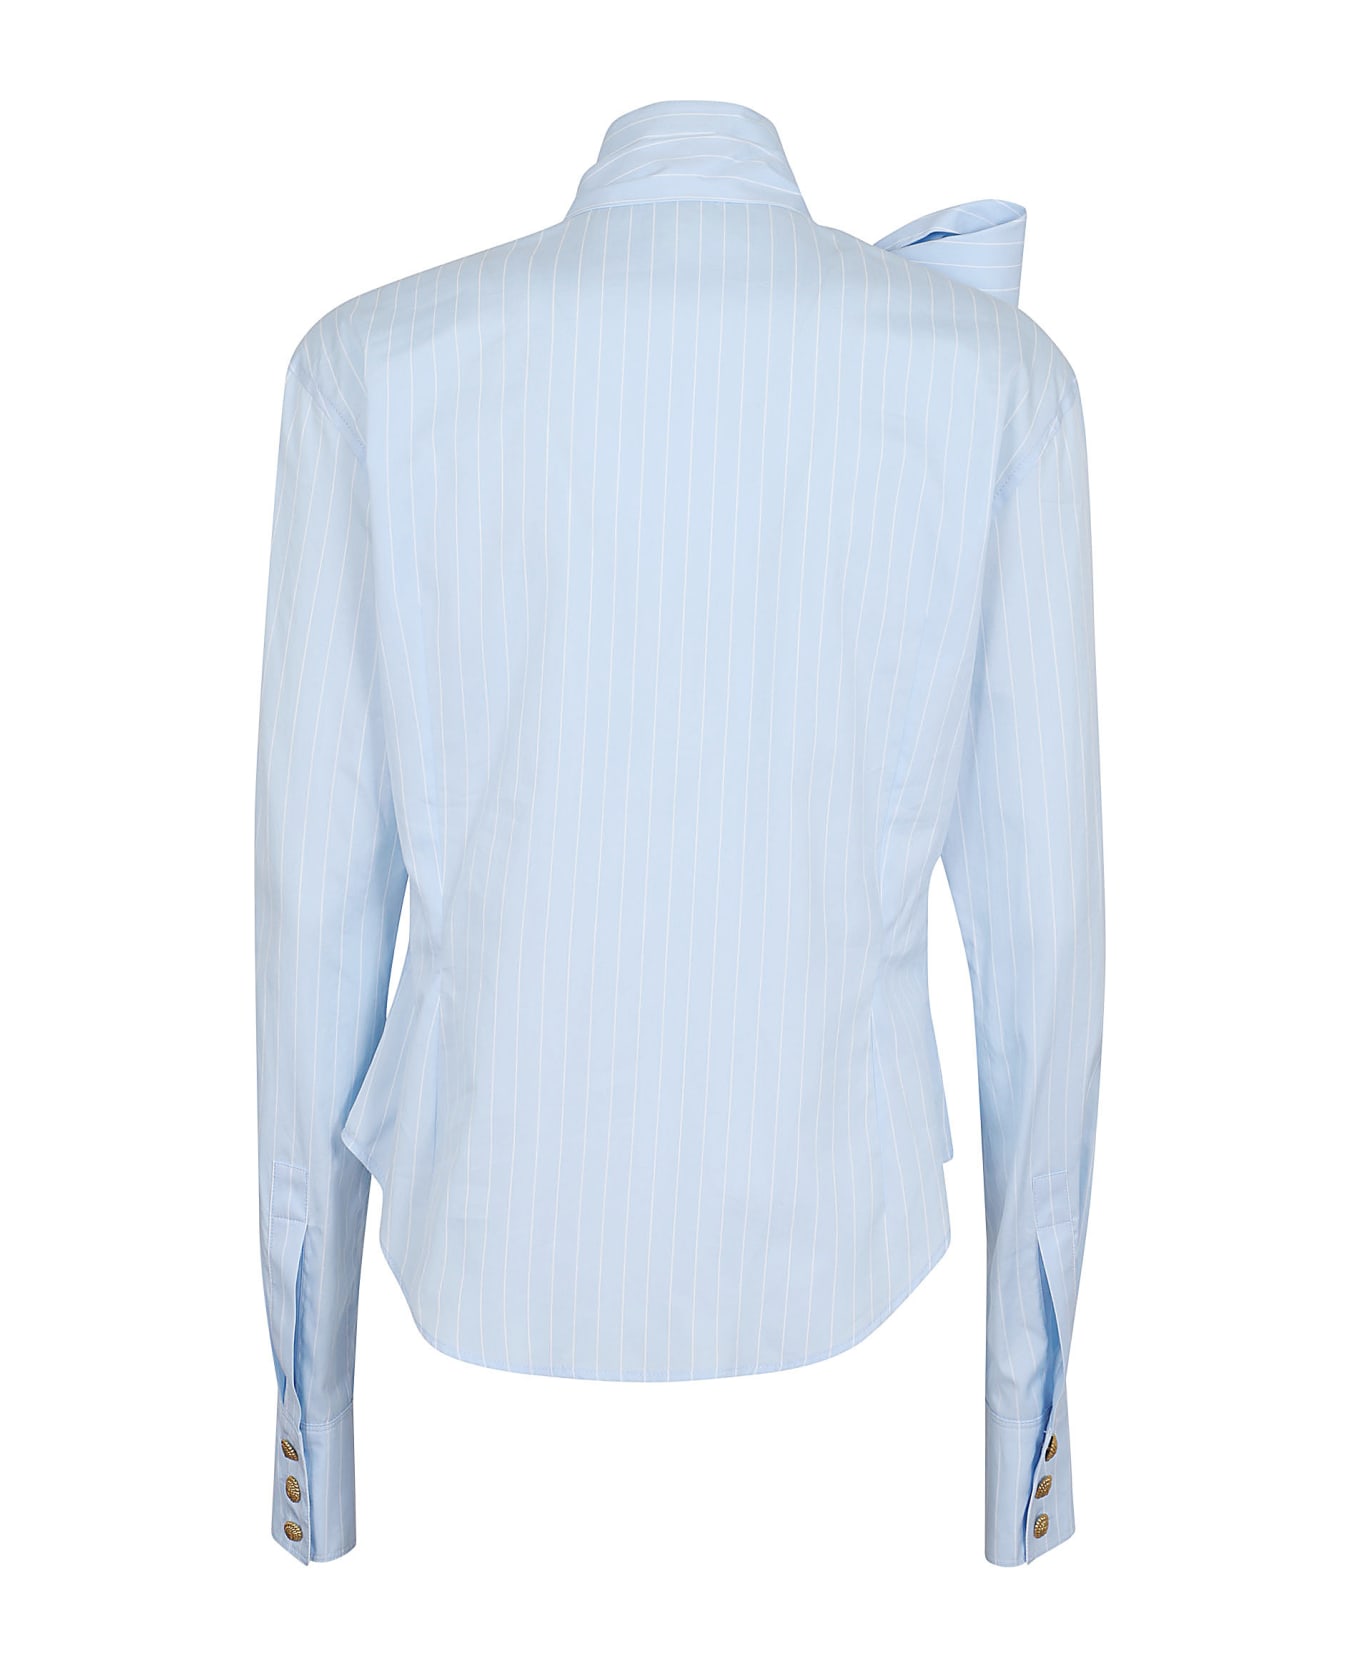 Balmain Pussy Bow Striped Cotton Popeline Shirt - Slj Bleu Pale Blanc シャツ